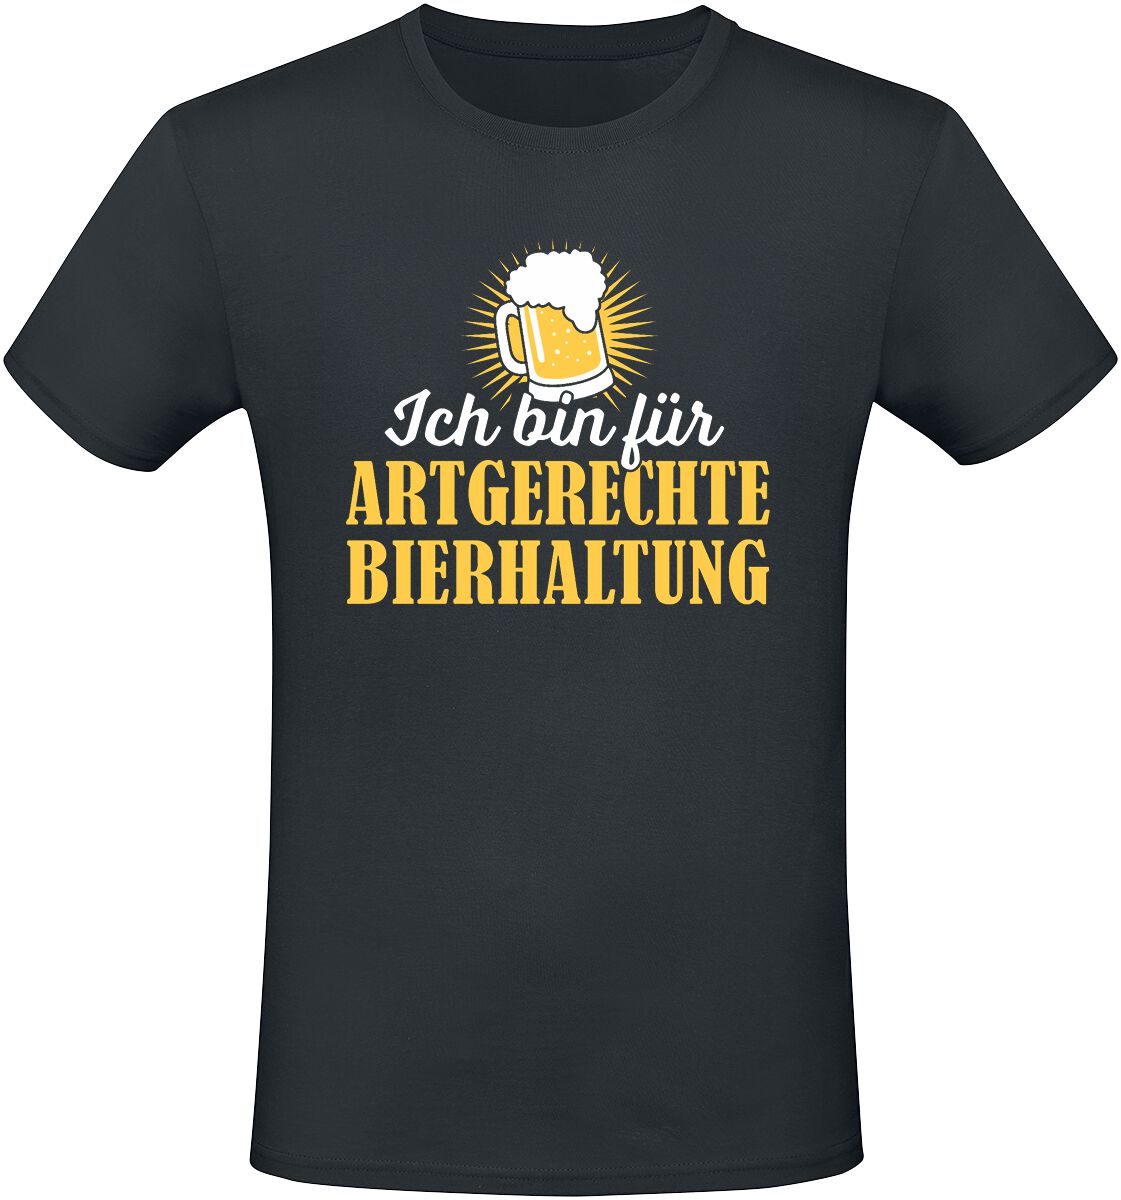 Alkohol & Party T-Shirt - Ich bin für artgerechte Bierhaltung - S bis 3XL - für Männer - Größe S - schwarz